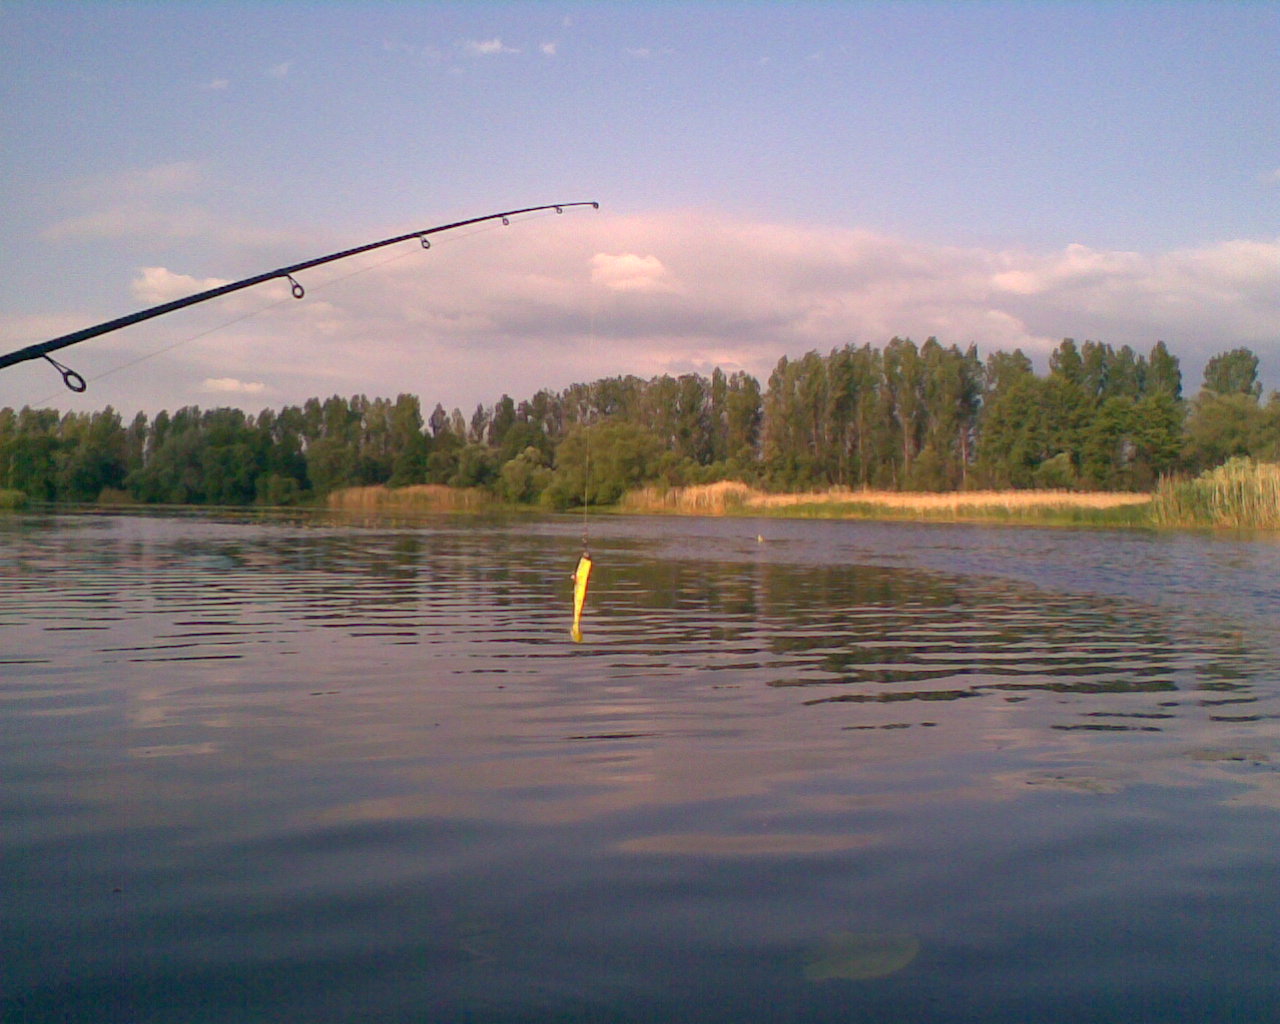 Рыбалка в белгородской области — обзор бесплатных и платных водоемов